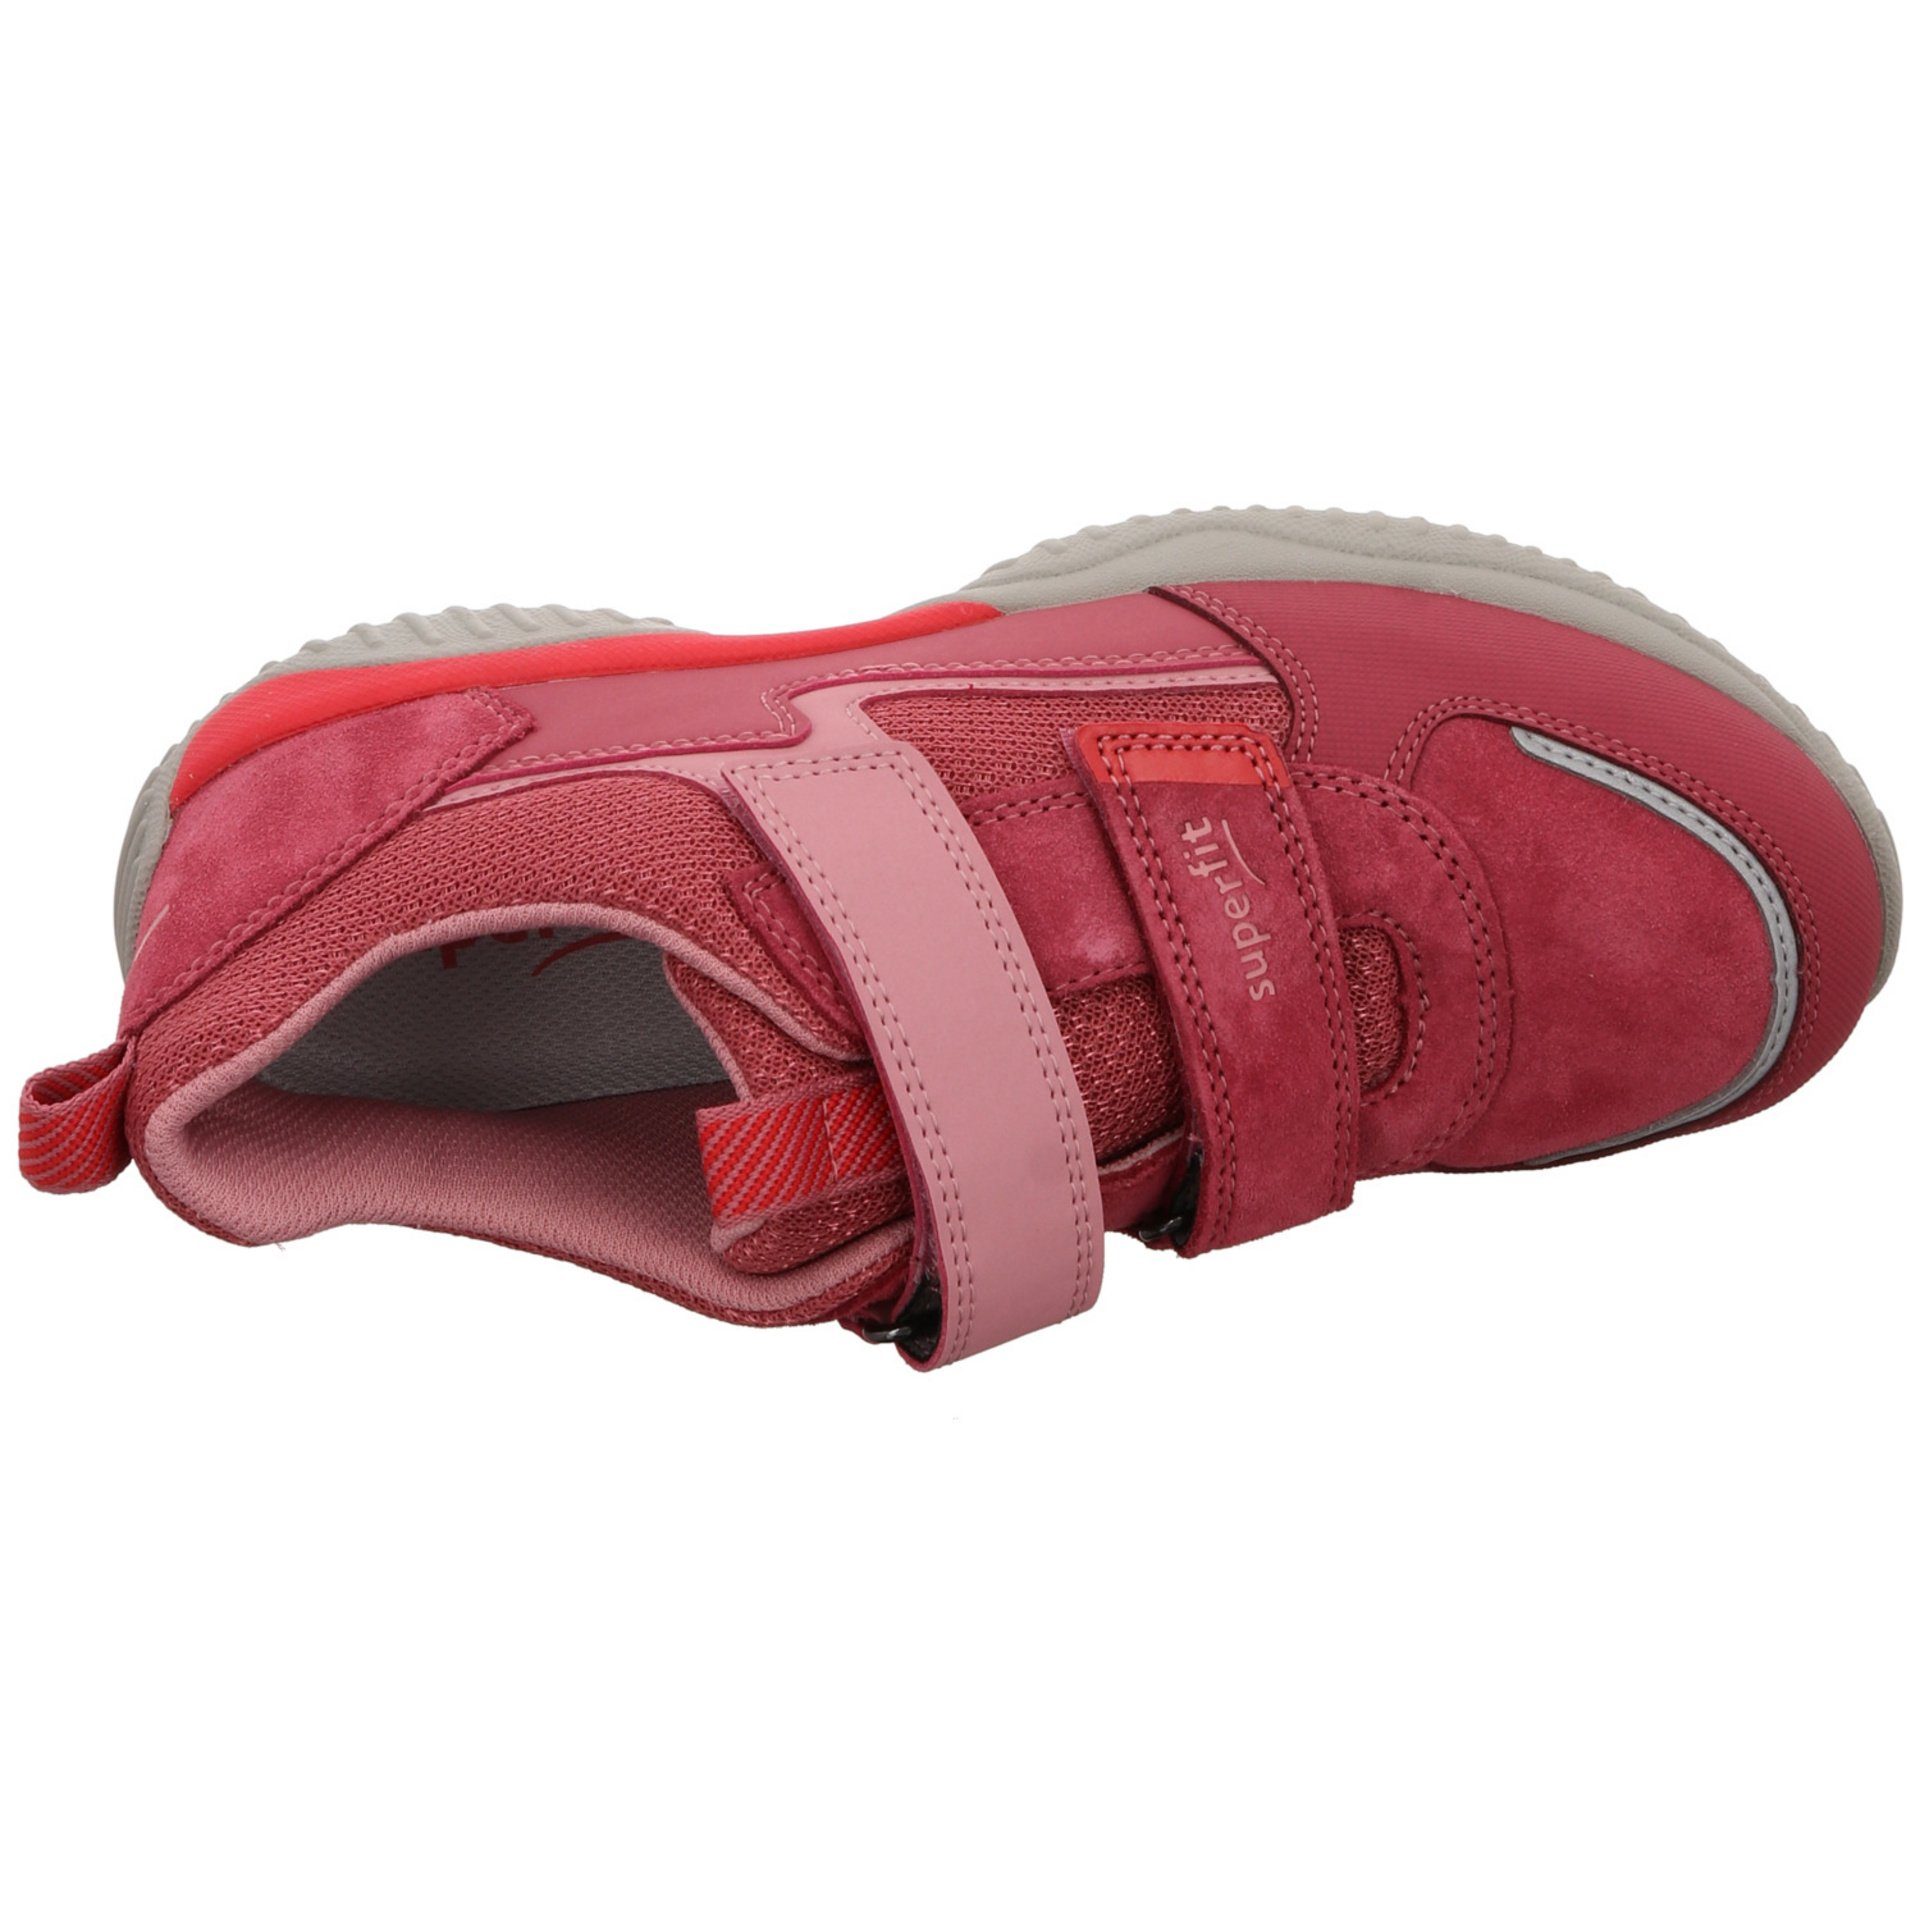 Superfit Jungen Schnürhalbschuhe Leder-/Textilkombination rot Klettschuh Storm pink Schnürschuh